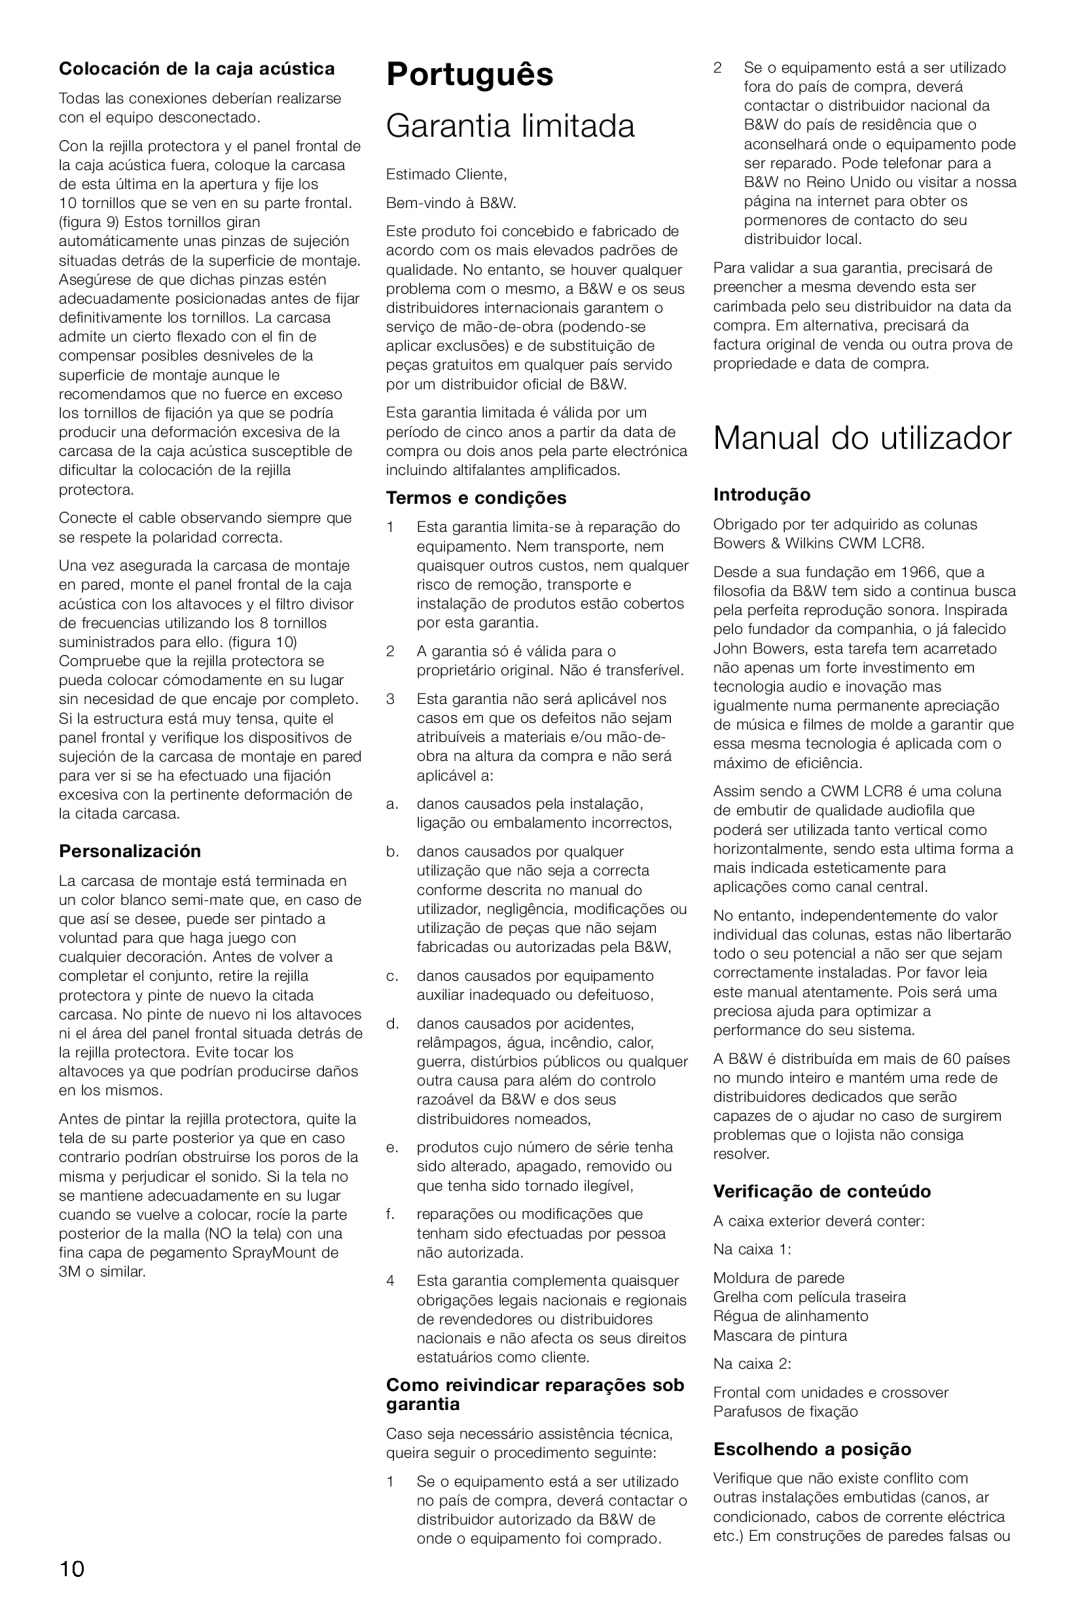 Bowers & Wilkins CWM-LCR8 Português, Garantia limitada, Manual do utilizador, Colocación de la caja acústica, Introdução 